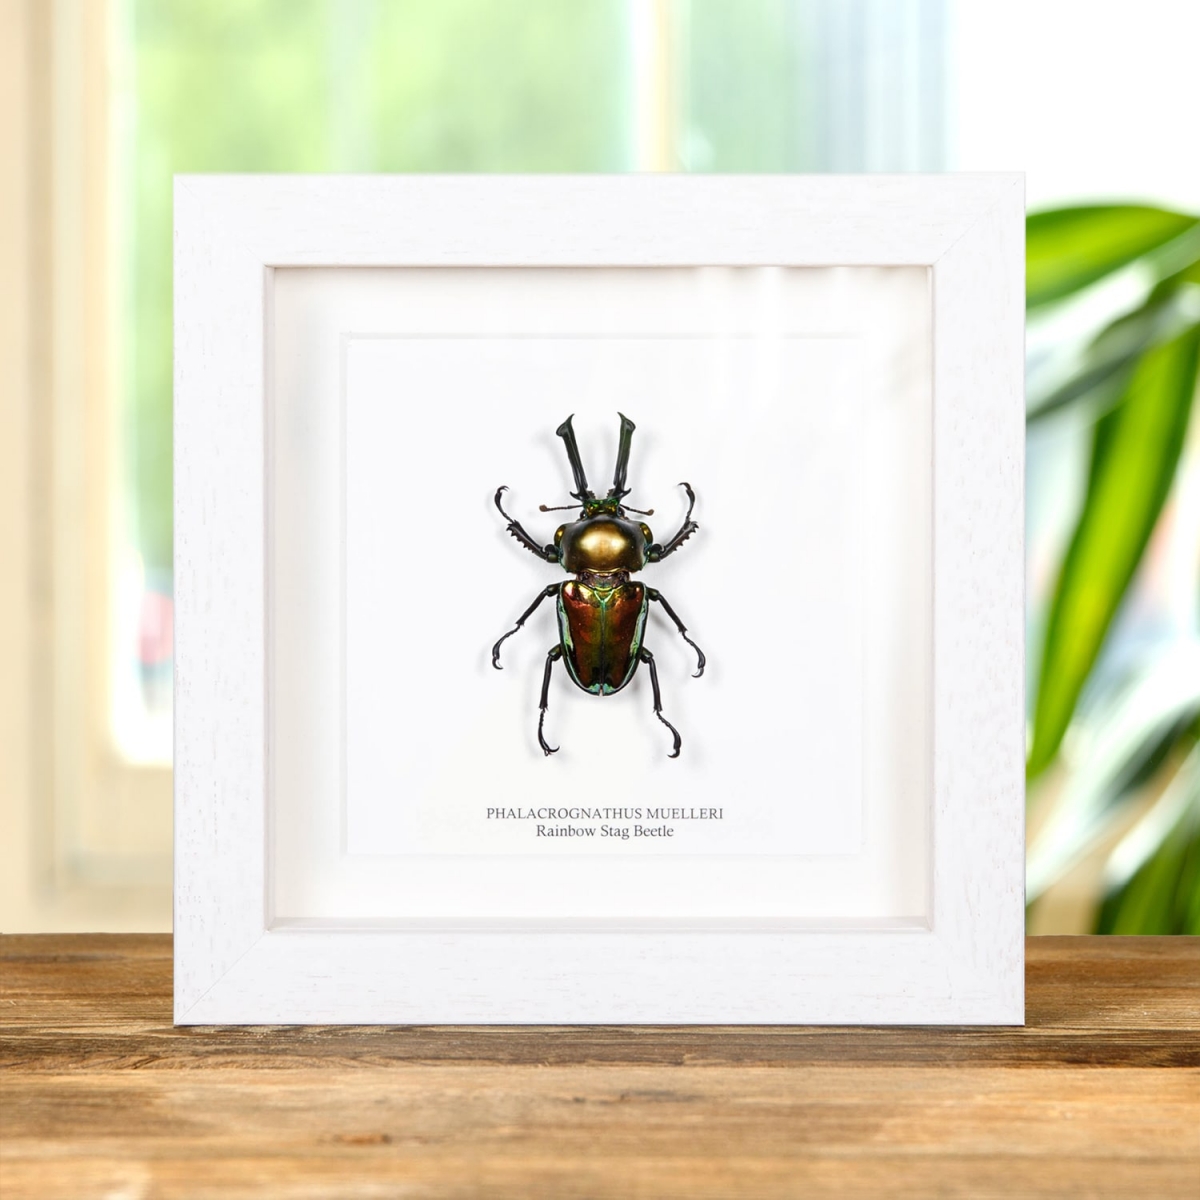 Rainbow Stag Beetle in Box Frame (Phalacrognathus muelleri)